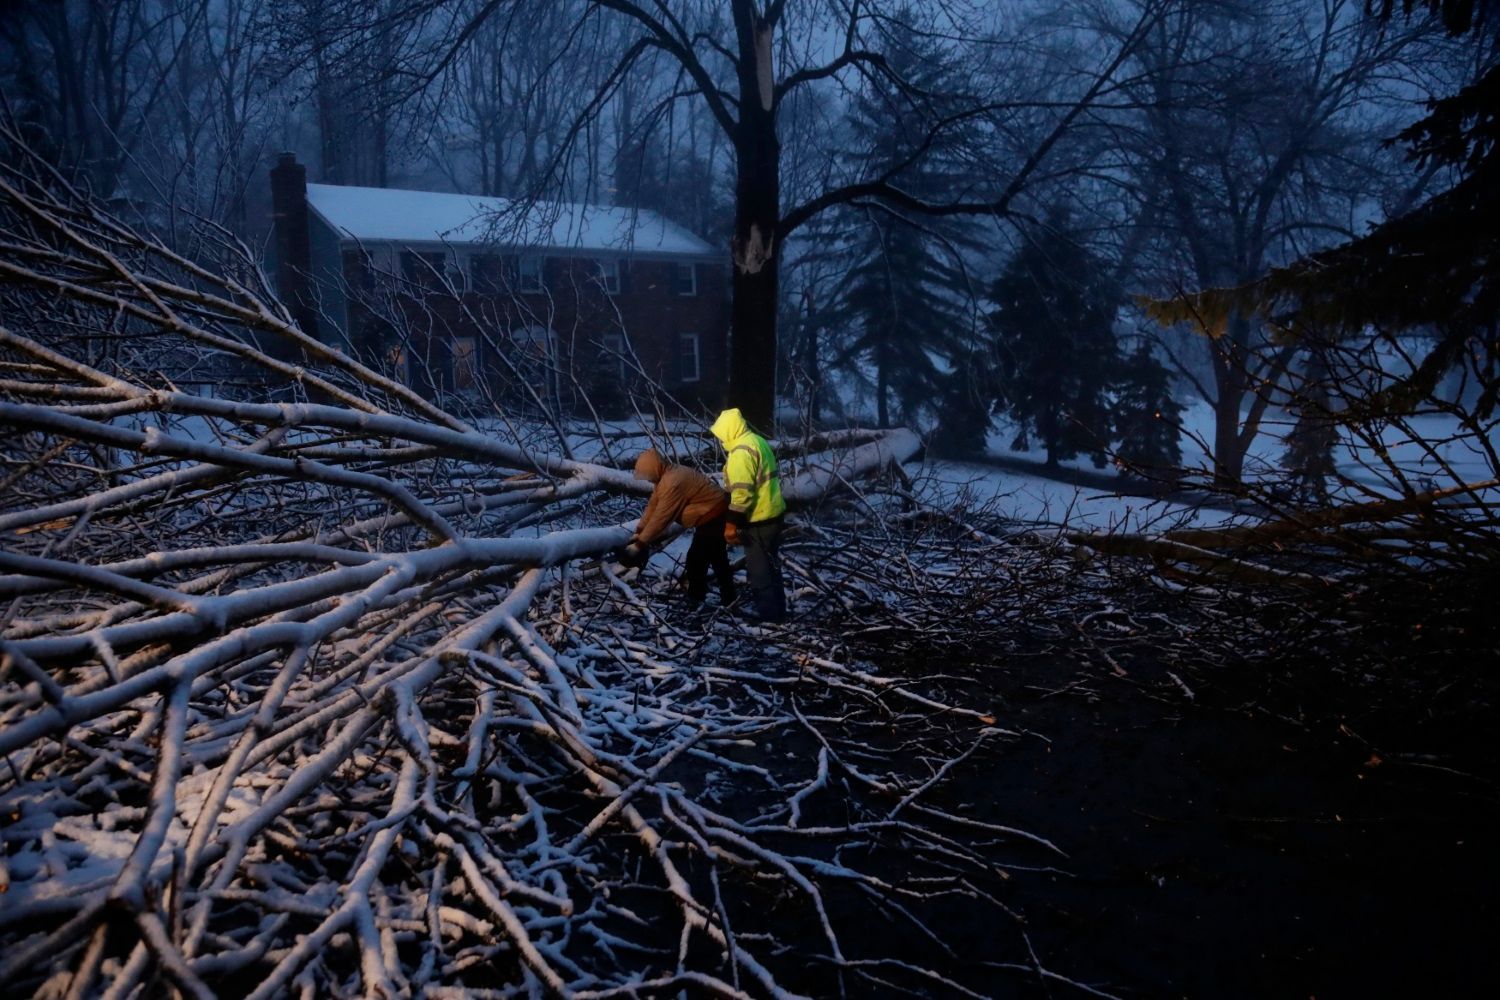 USA bouře březen 2018 Pensylvánie stromy hurikán